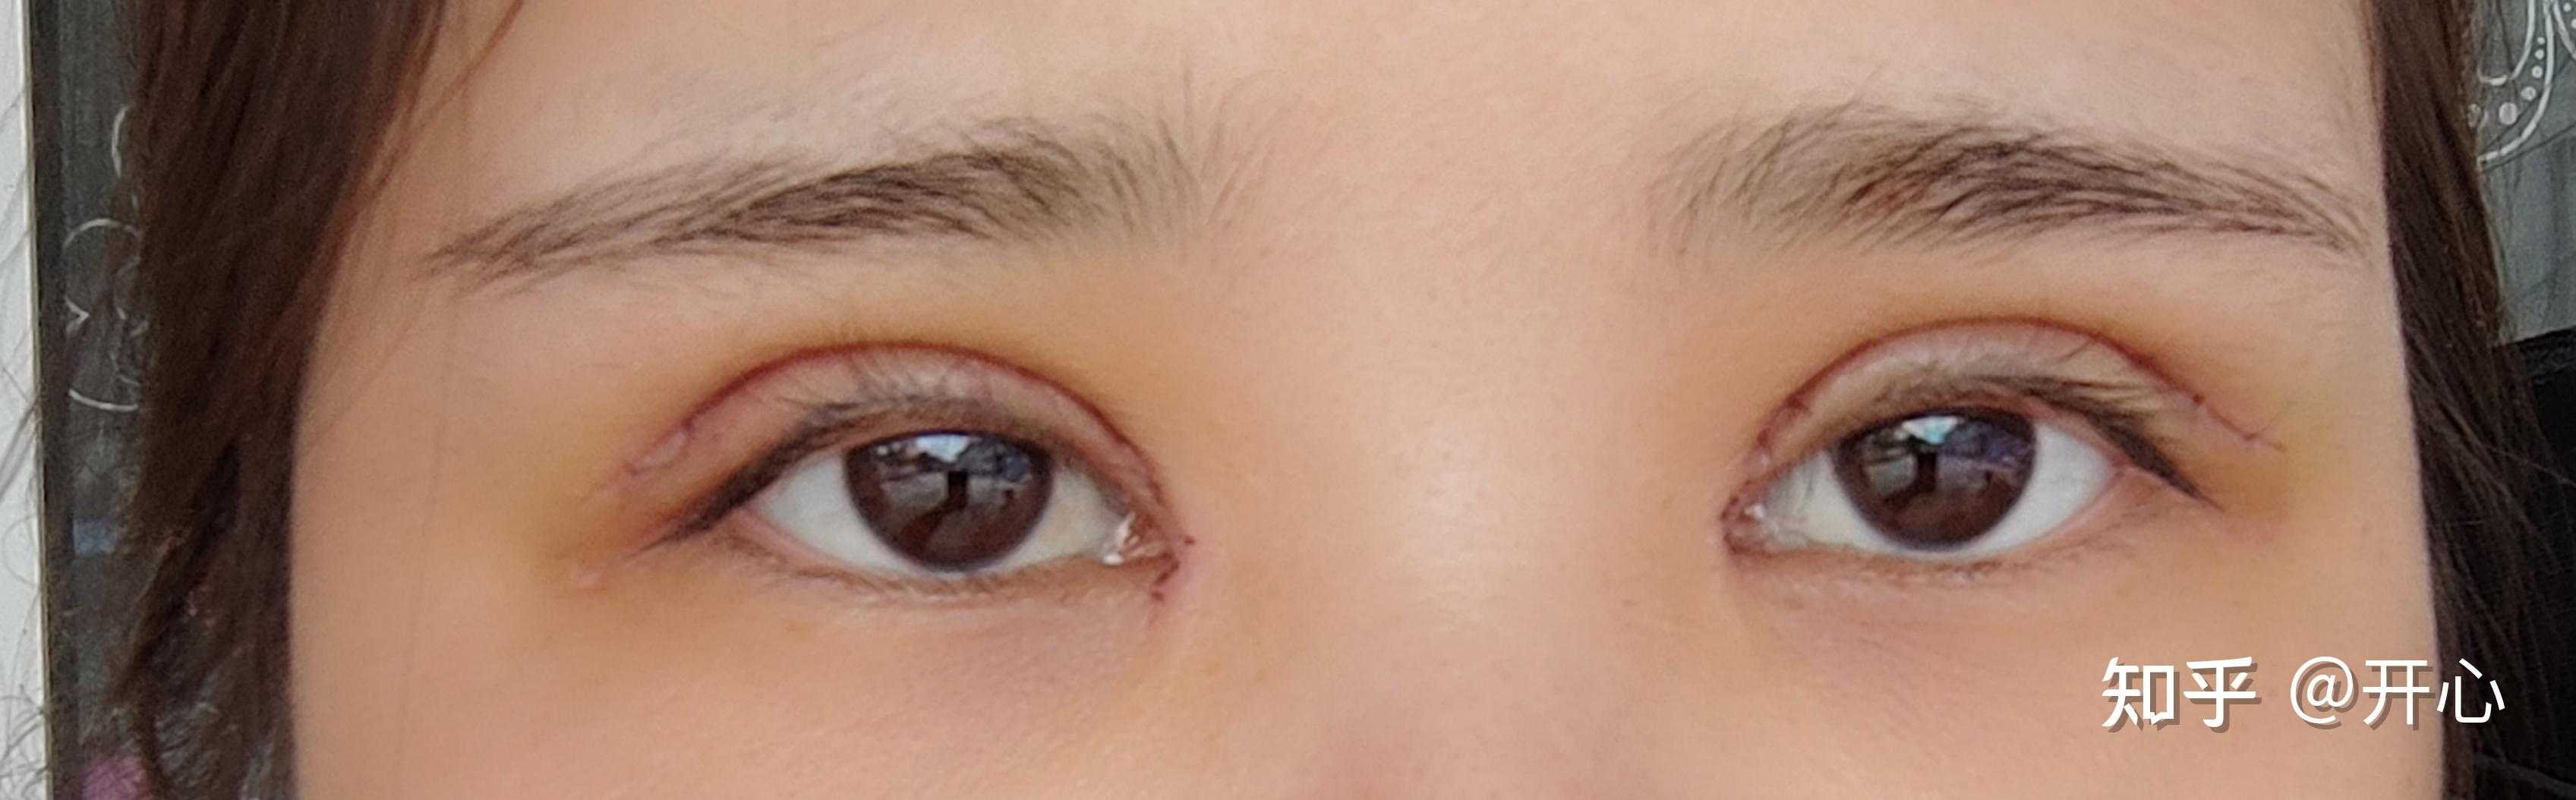 记录全切双眼皮+开内眼角恢复过程 - 知乎